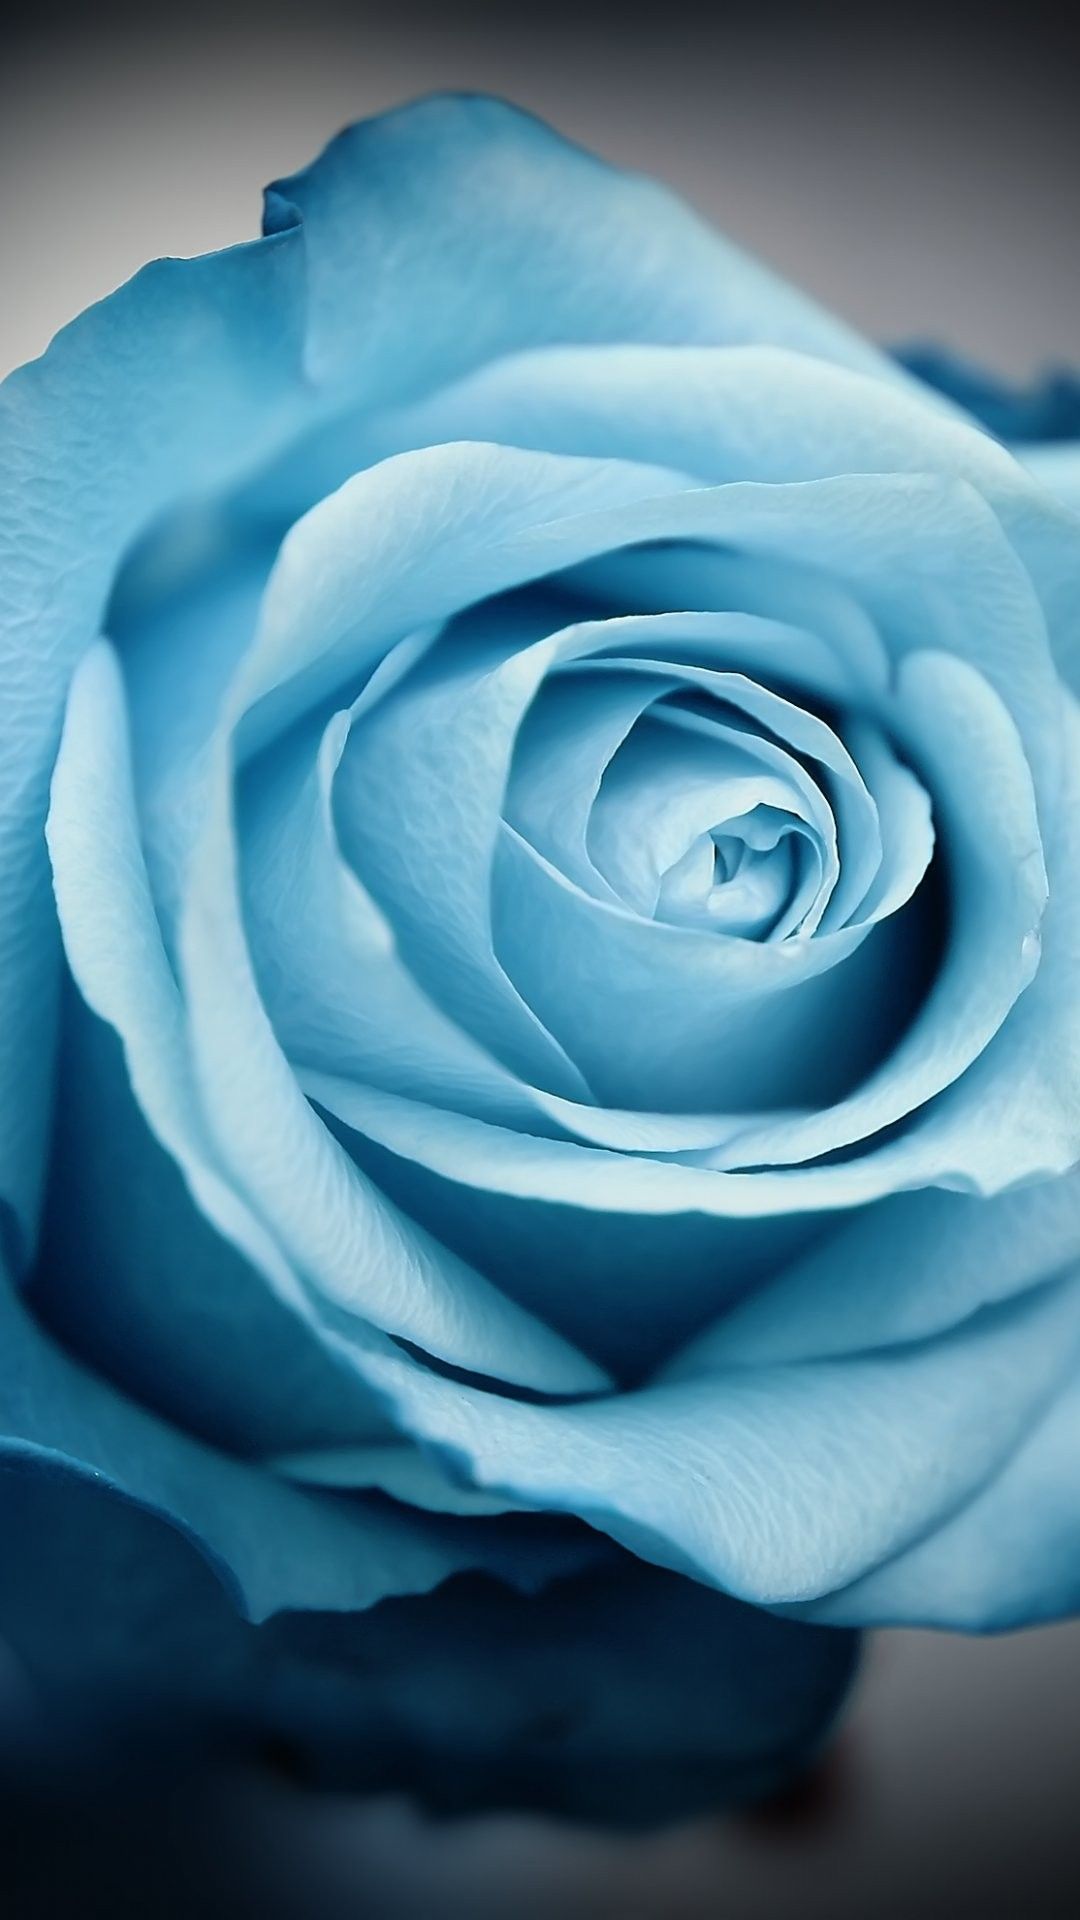 hübsche hintergrundbilder für das iphone 6,rose,blau,blume,gartenrosen,blütenblatt